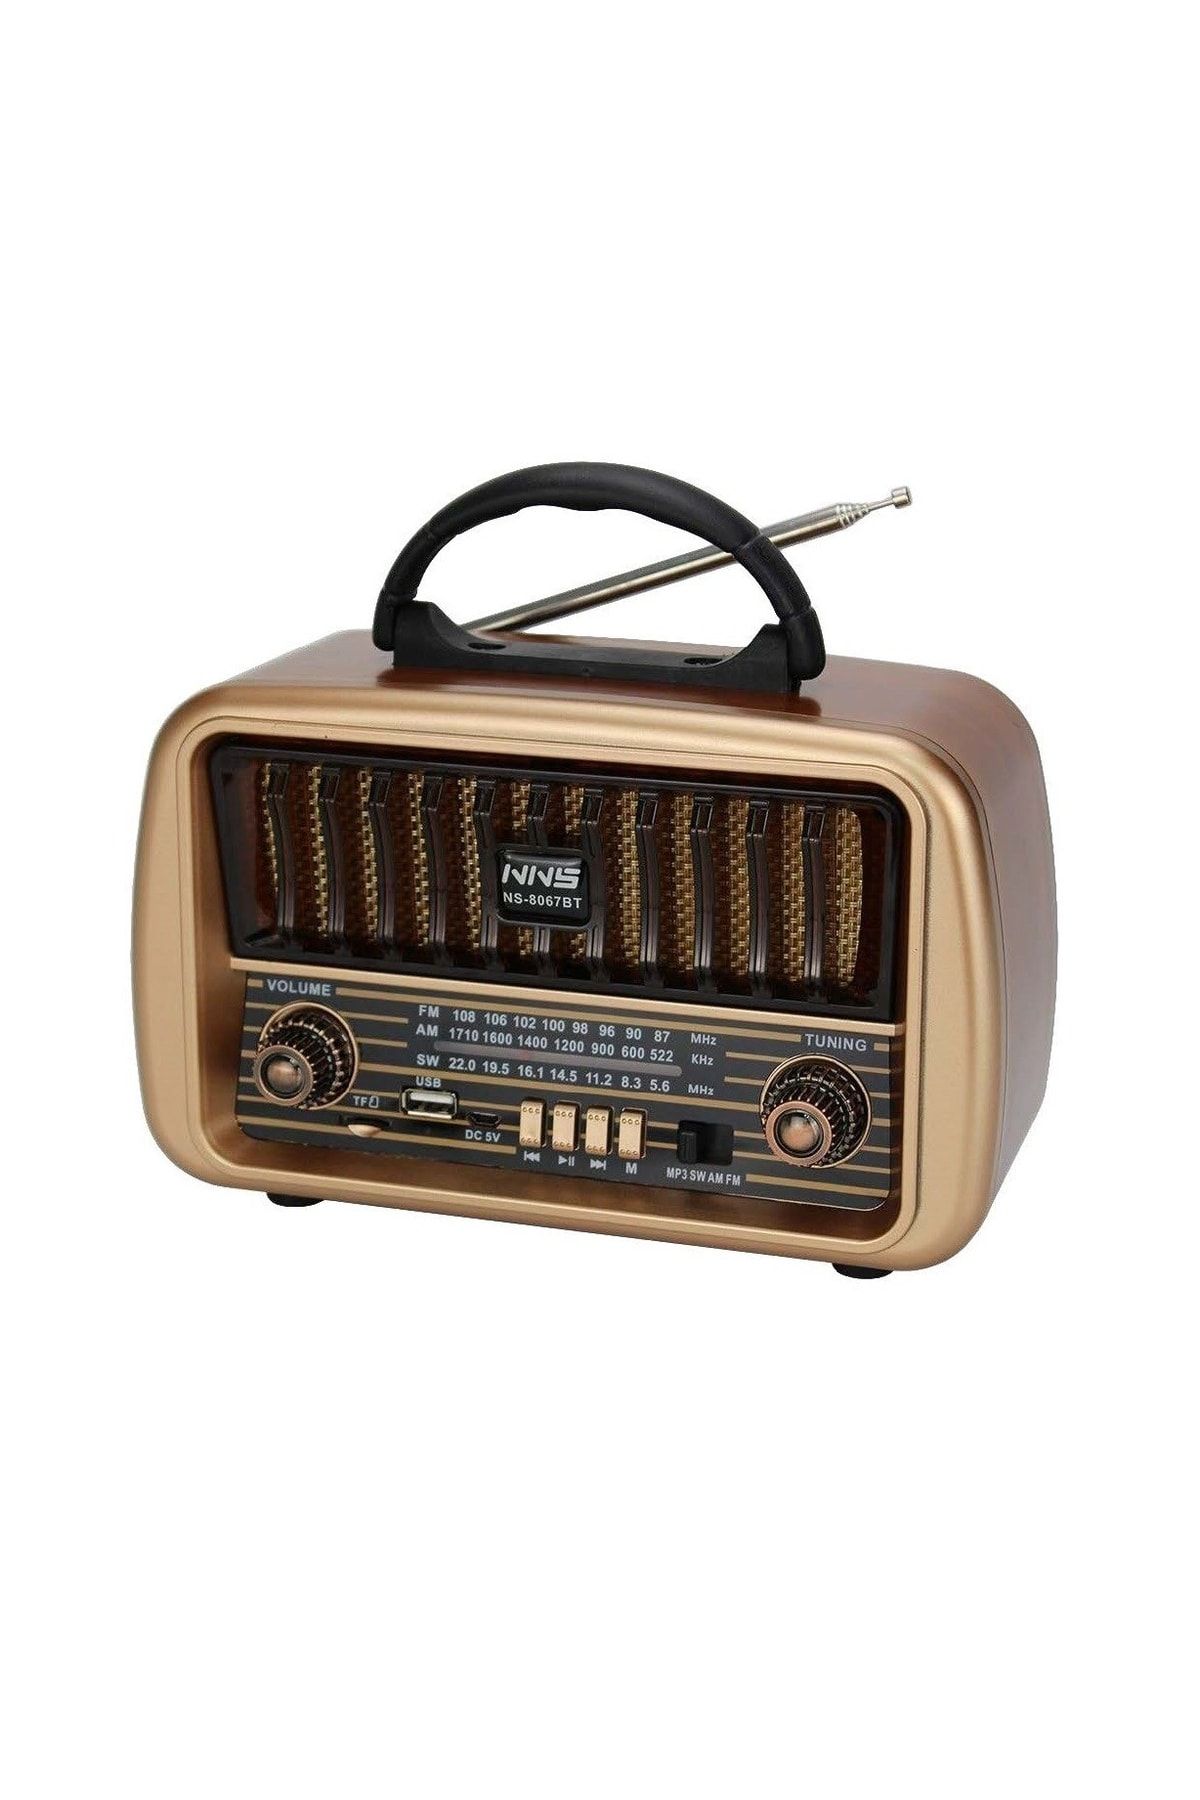 Concord Ns8067 Retro Nostaljik Radyo Usb Sd Kart Girişli Şarjlı Antenli Radyo Bluetooth Hoparlör